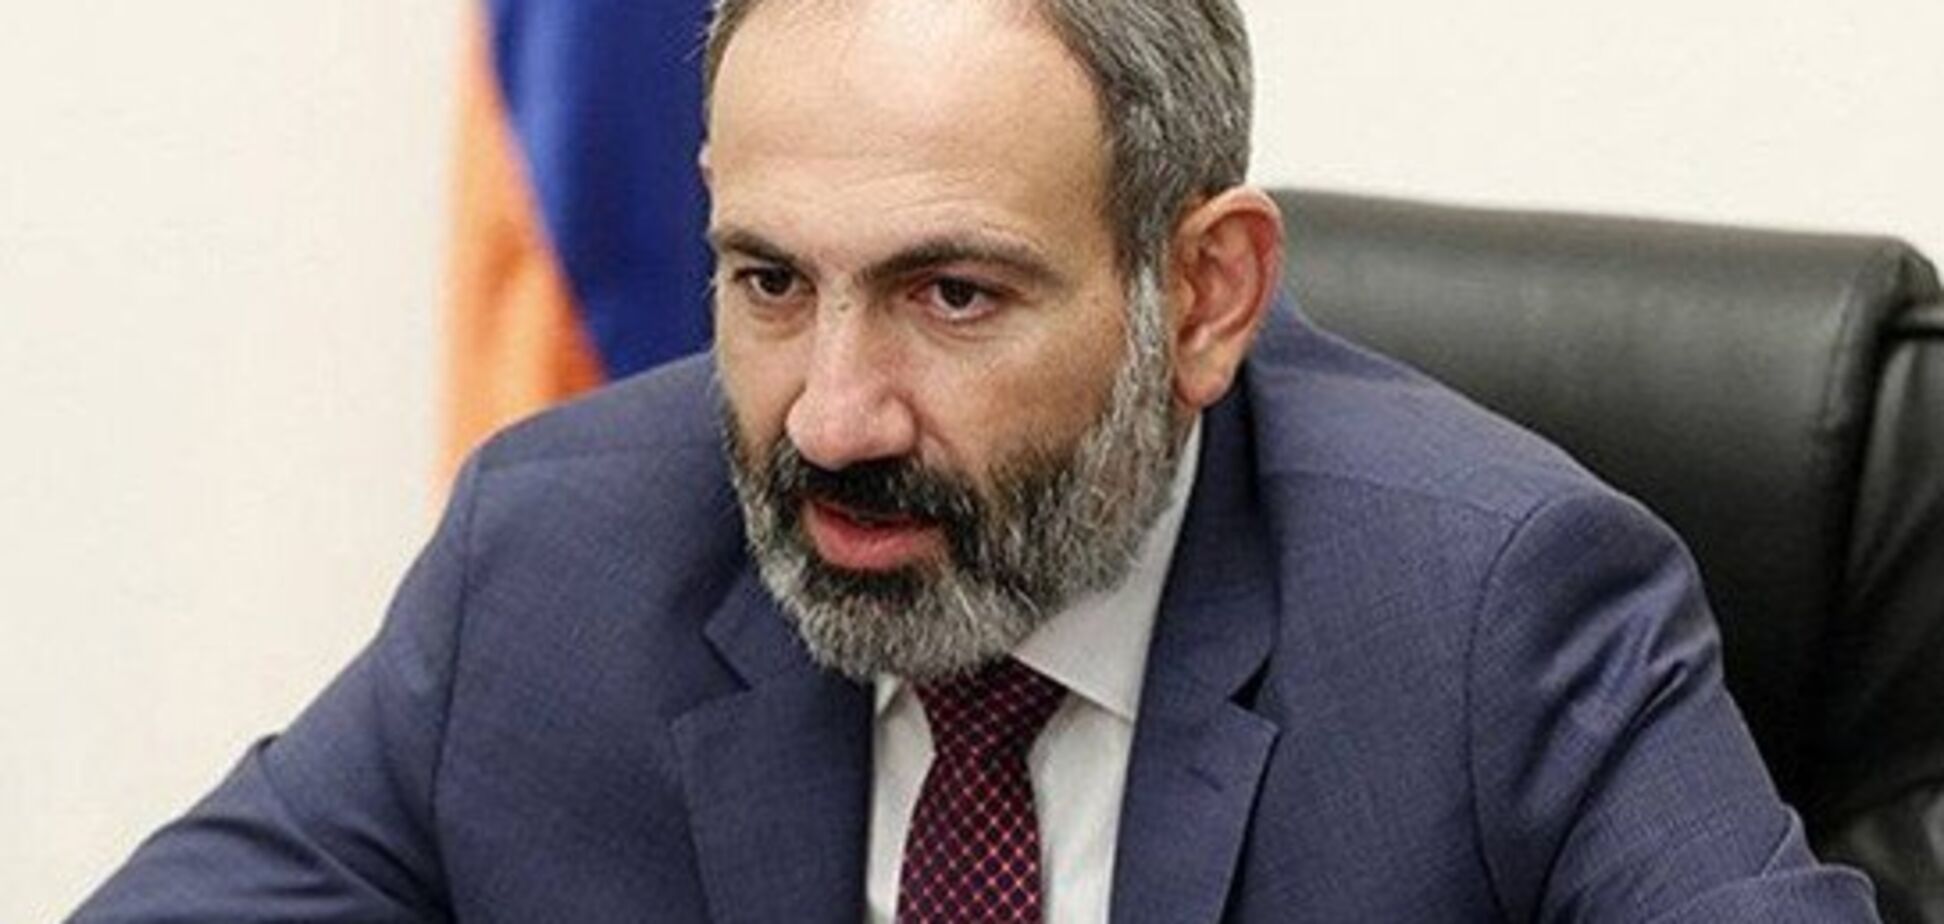 Парламент Армении не избрал Пашиняна премьером: что известно